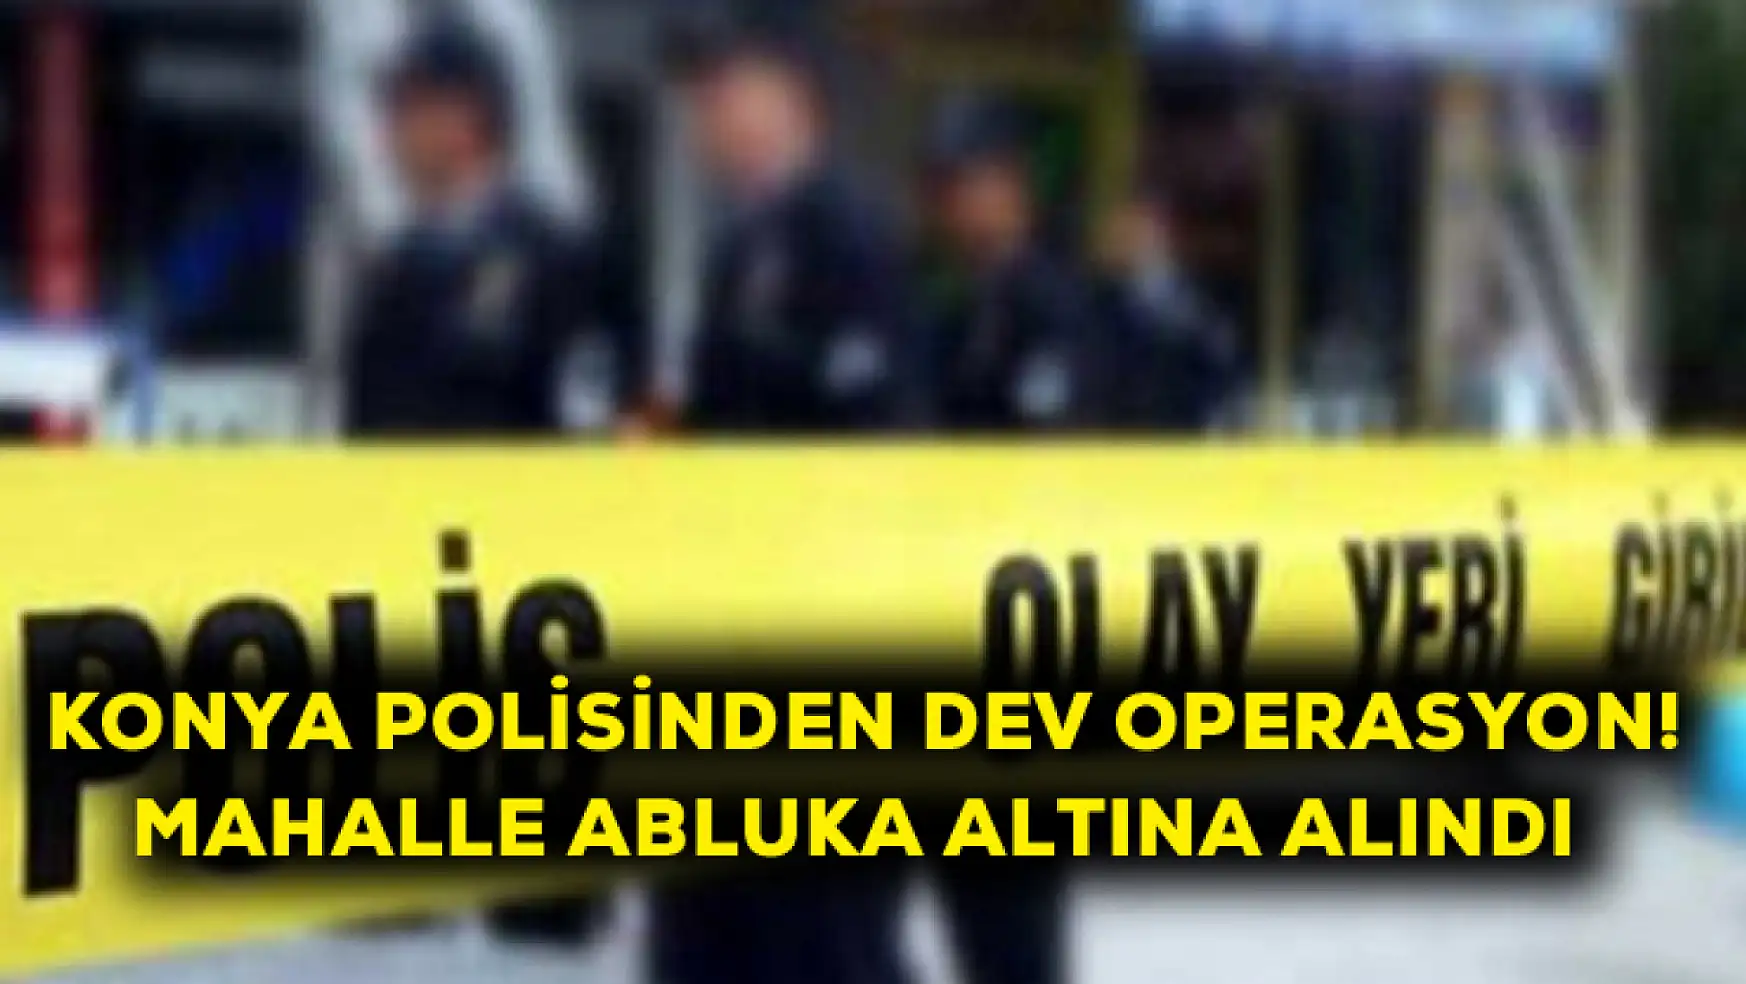 Konya polisinden dev operasyon! Mahalle abluka altına alındı